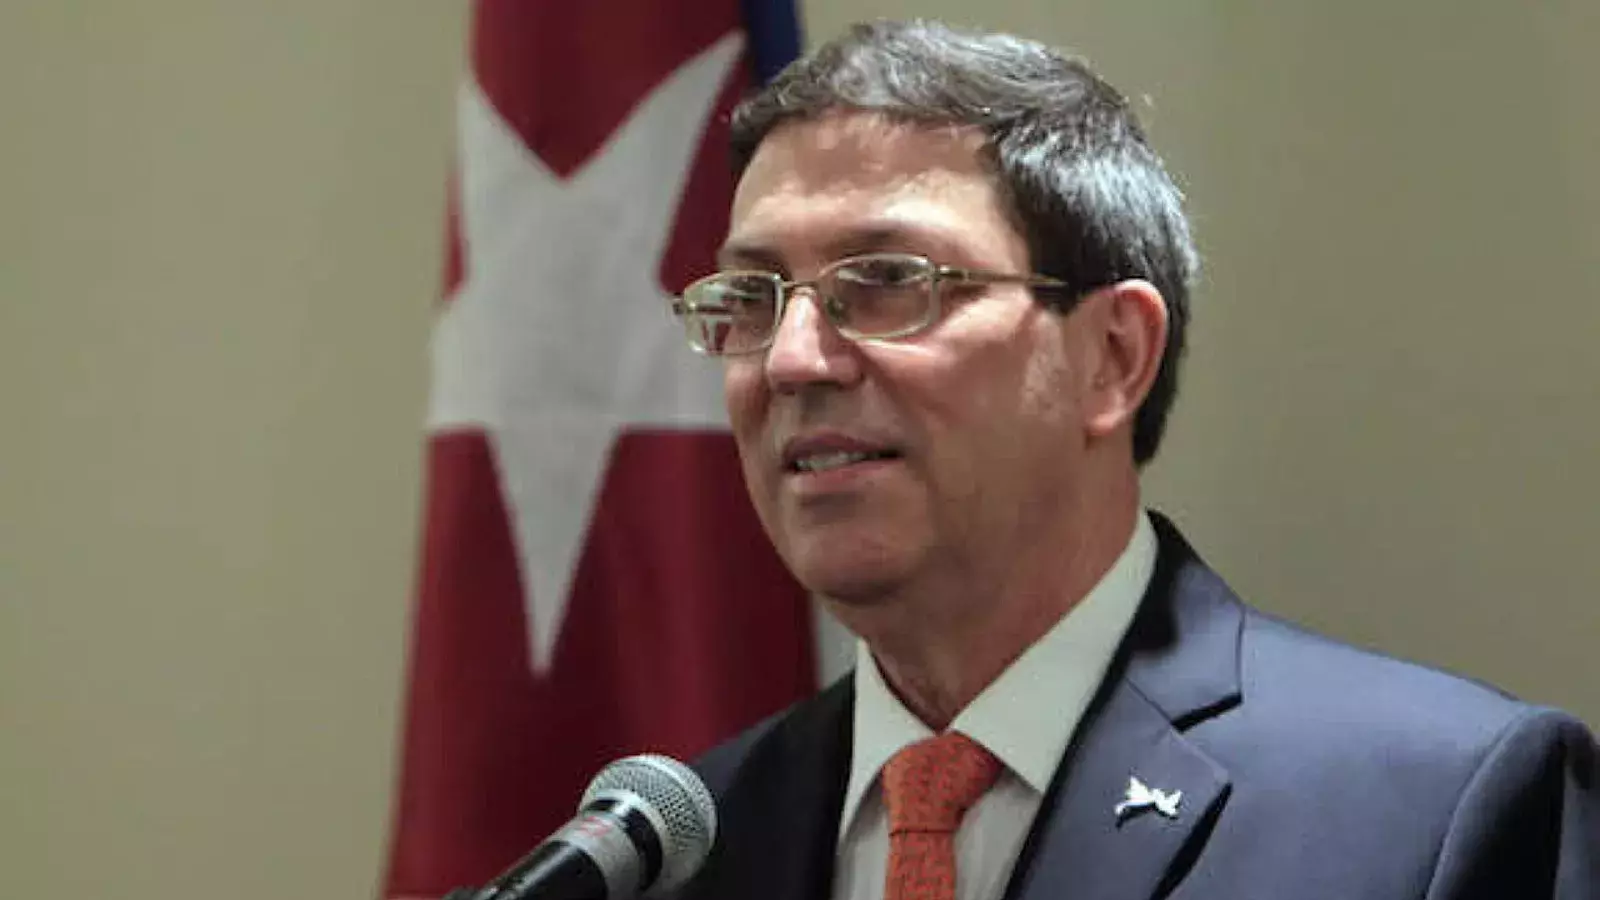 Canciller del régimen cubano Bruno Rodríguez Parrilla